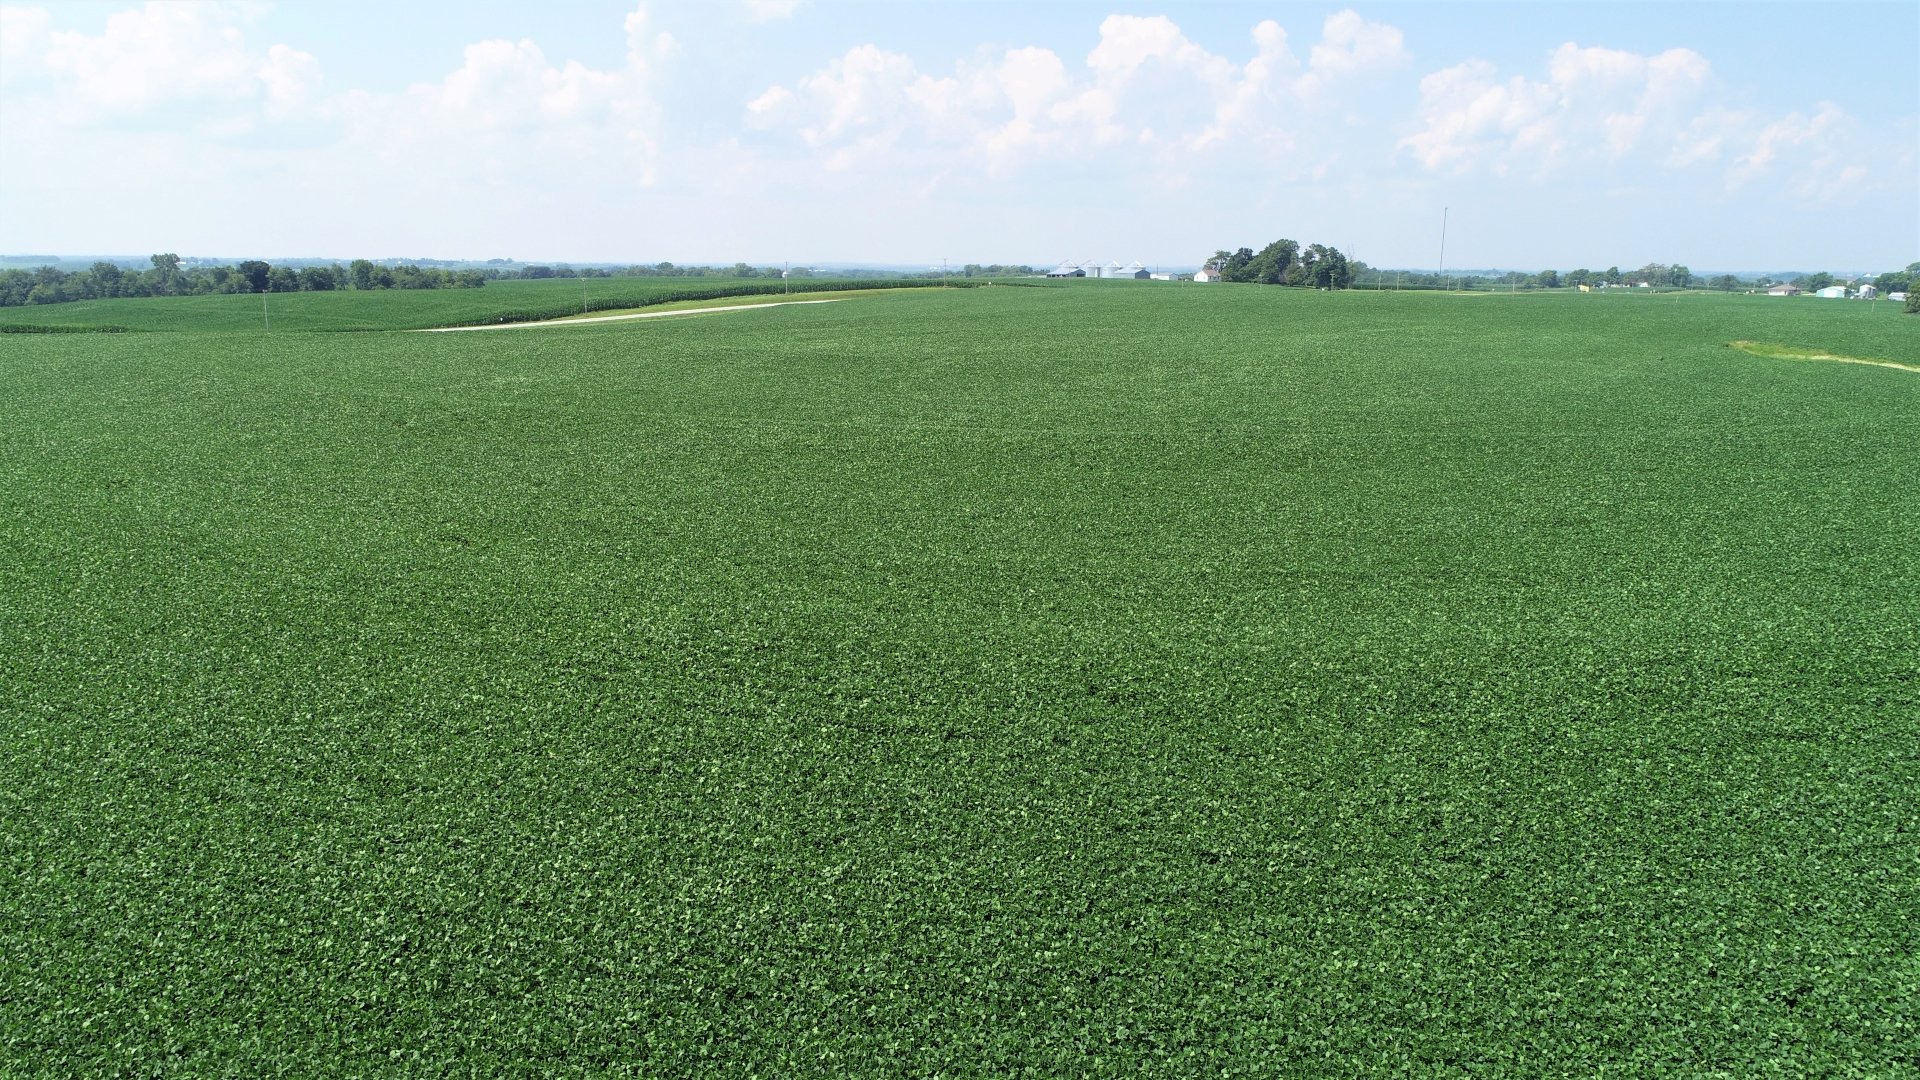 July 2020 - Soybean Crop